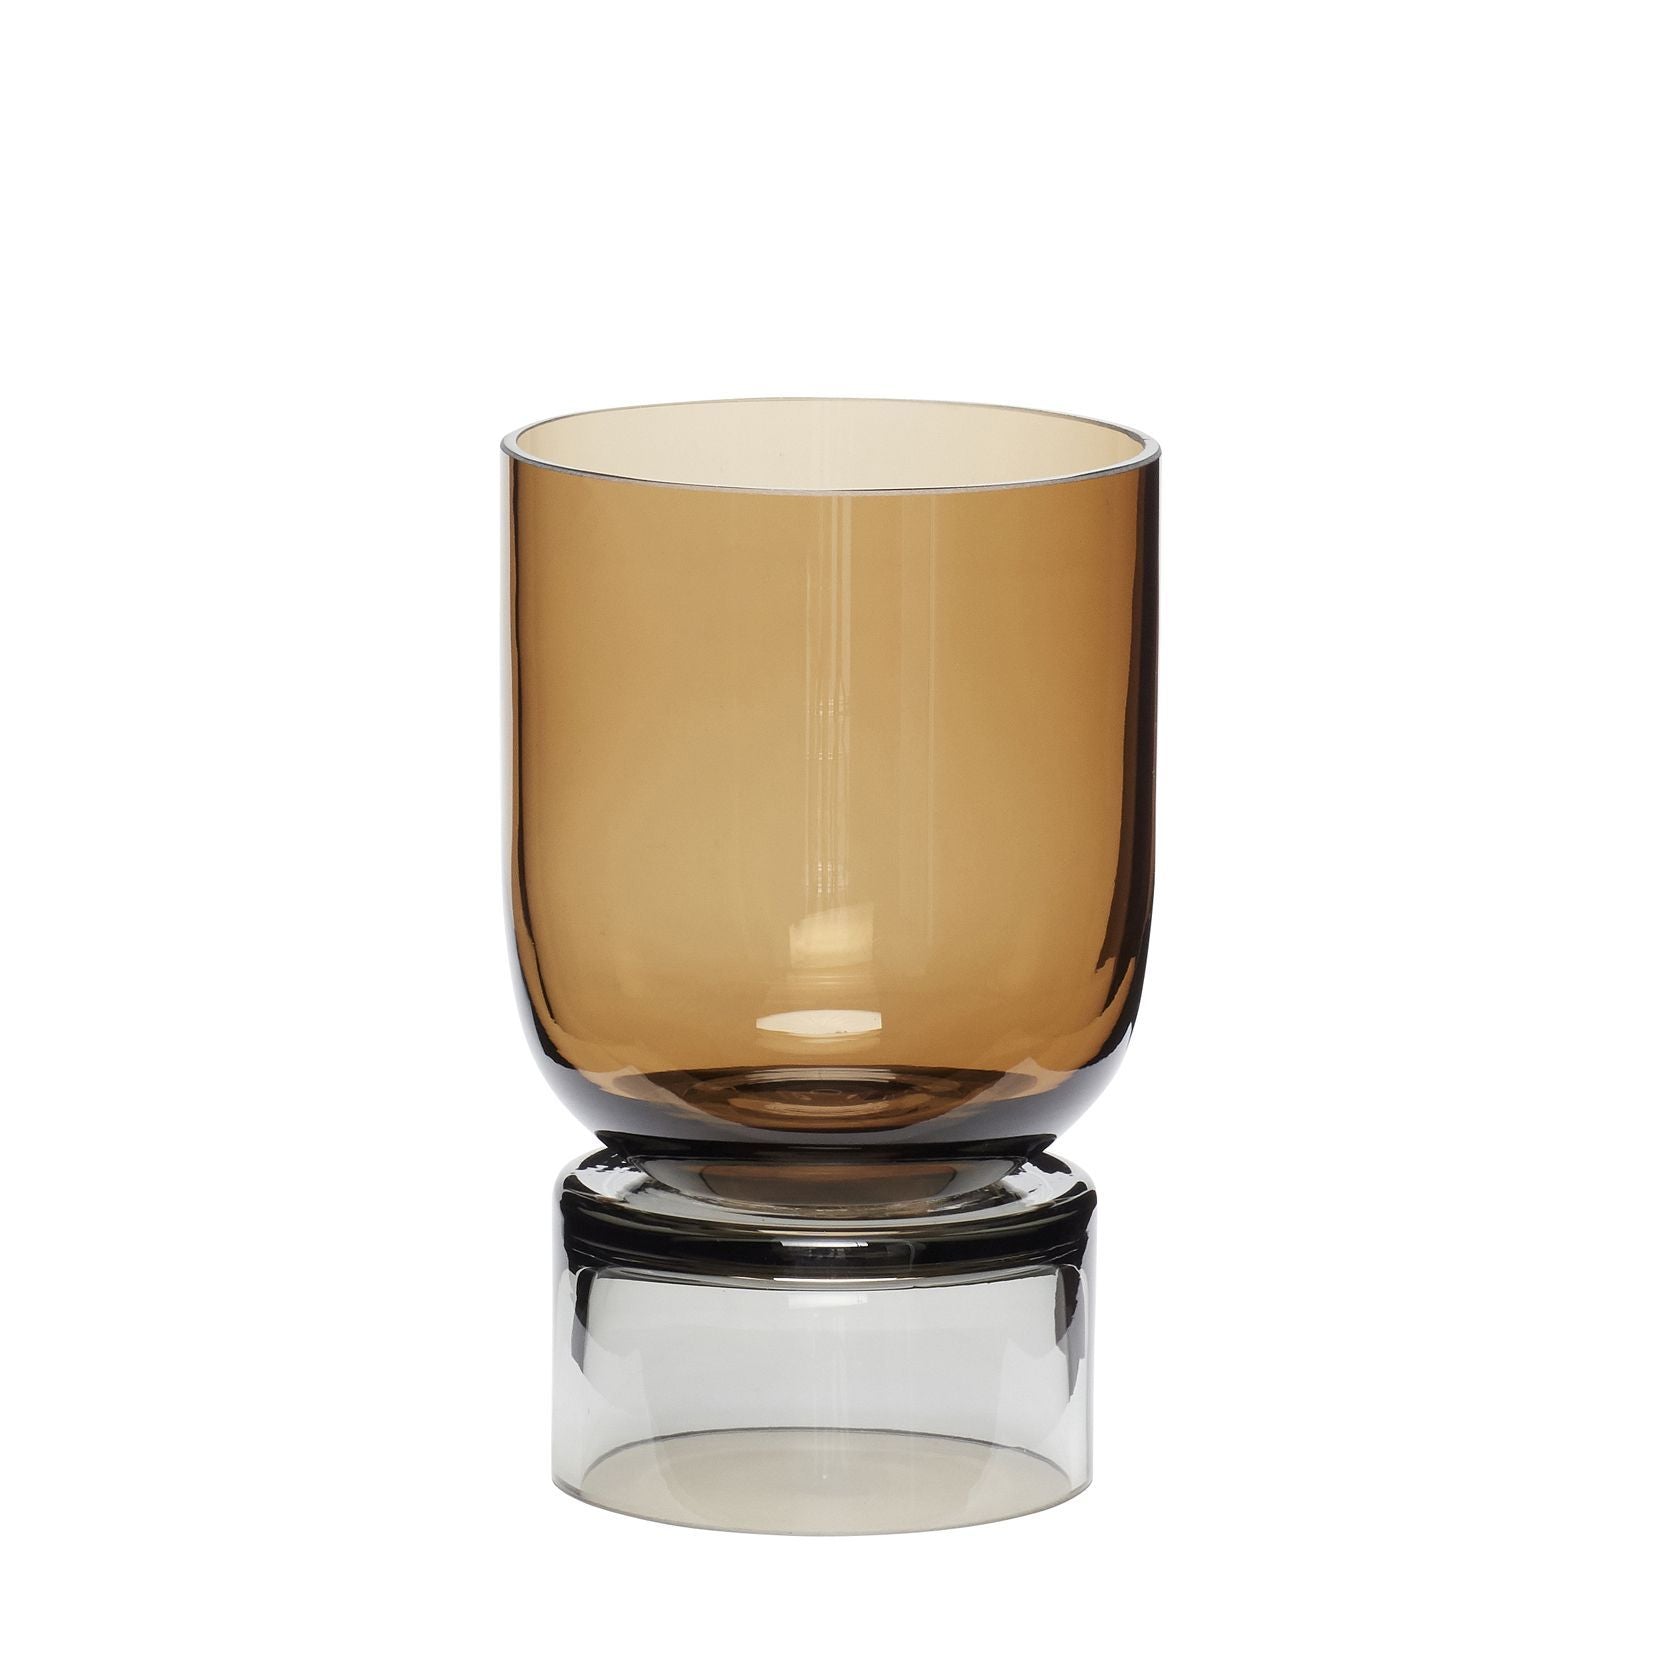 Hübsch Stand Vase Handmade Glas Bernstein/Grau, øx H 11x18 Cm